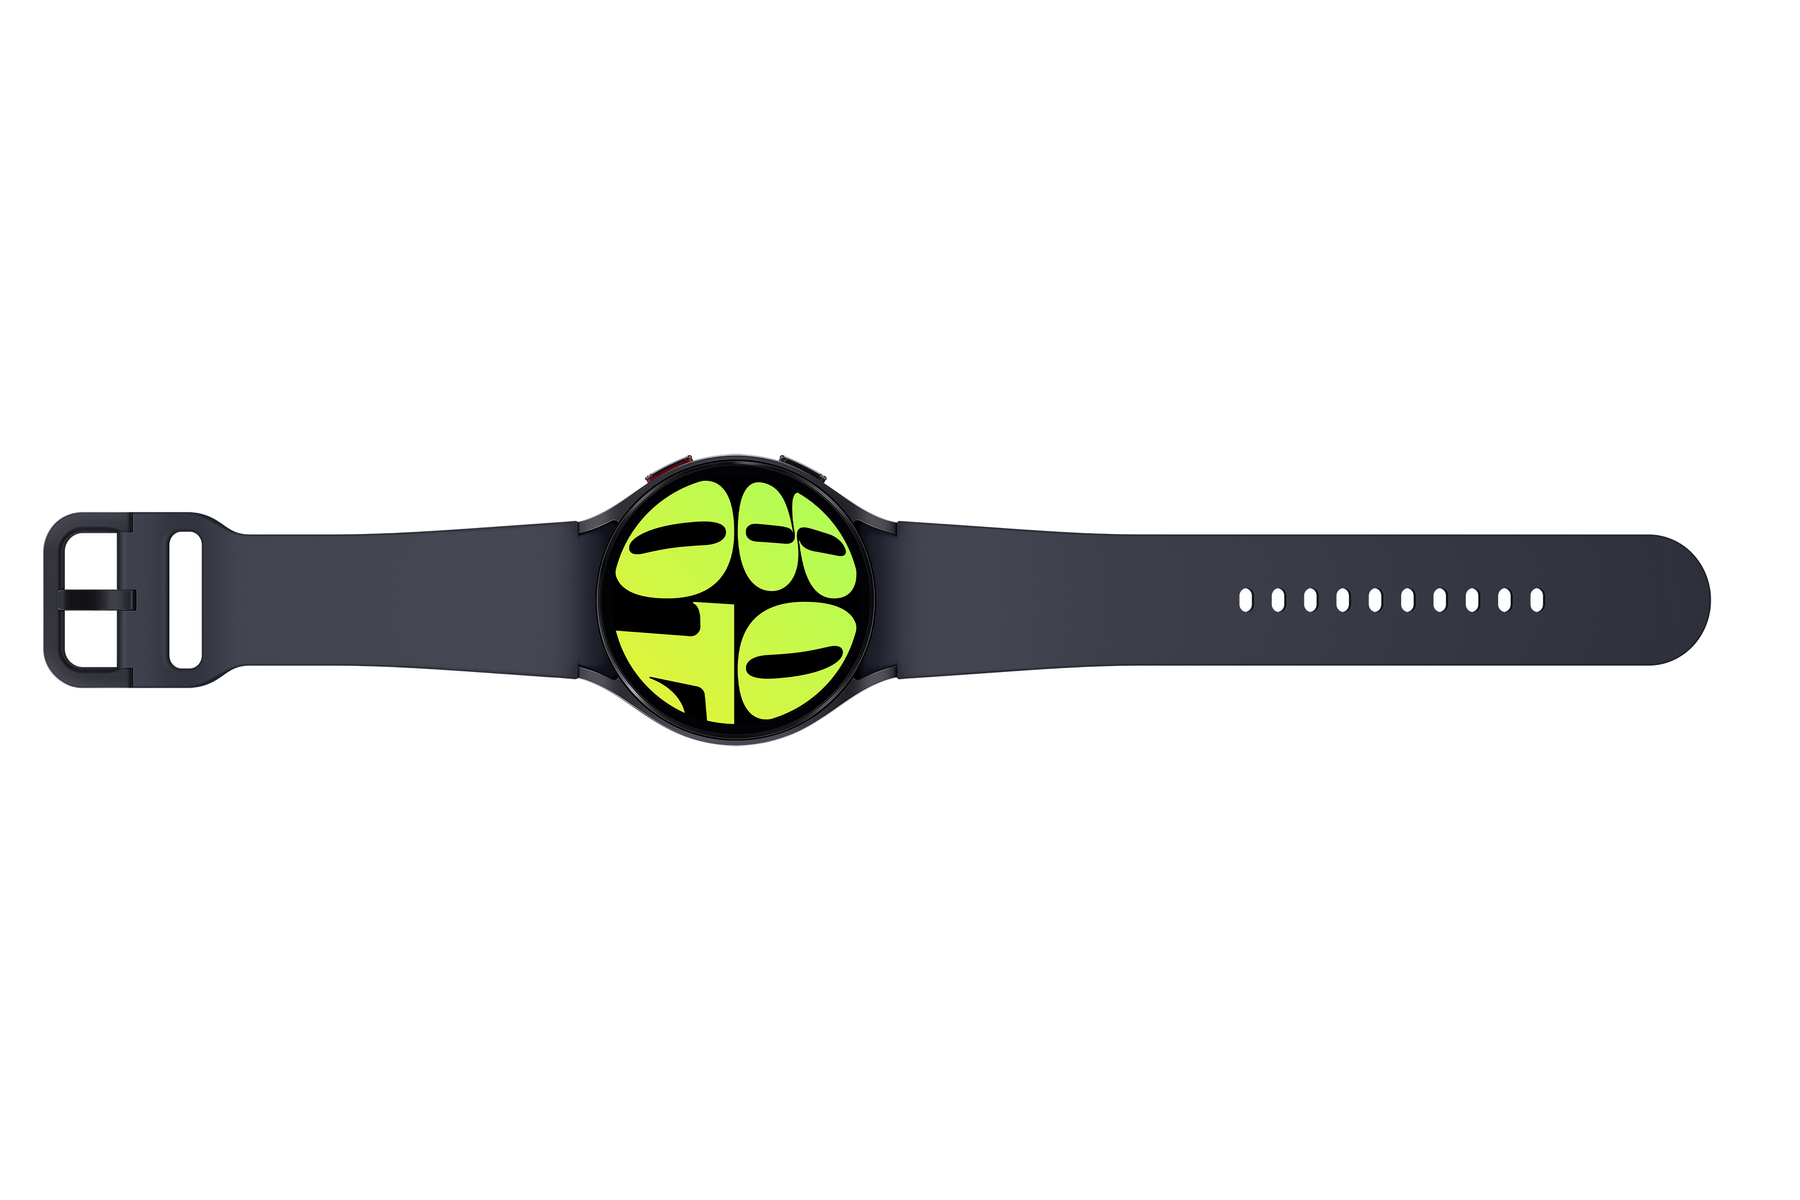 SAMSUNG Galaxy Watch Graphit 6 graphite R940 44mm Kunststoff, Smart Watch Aluminium mm, BT Breite: 20